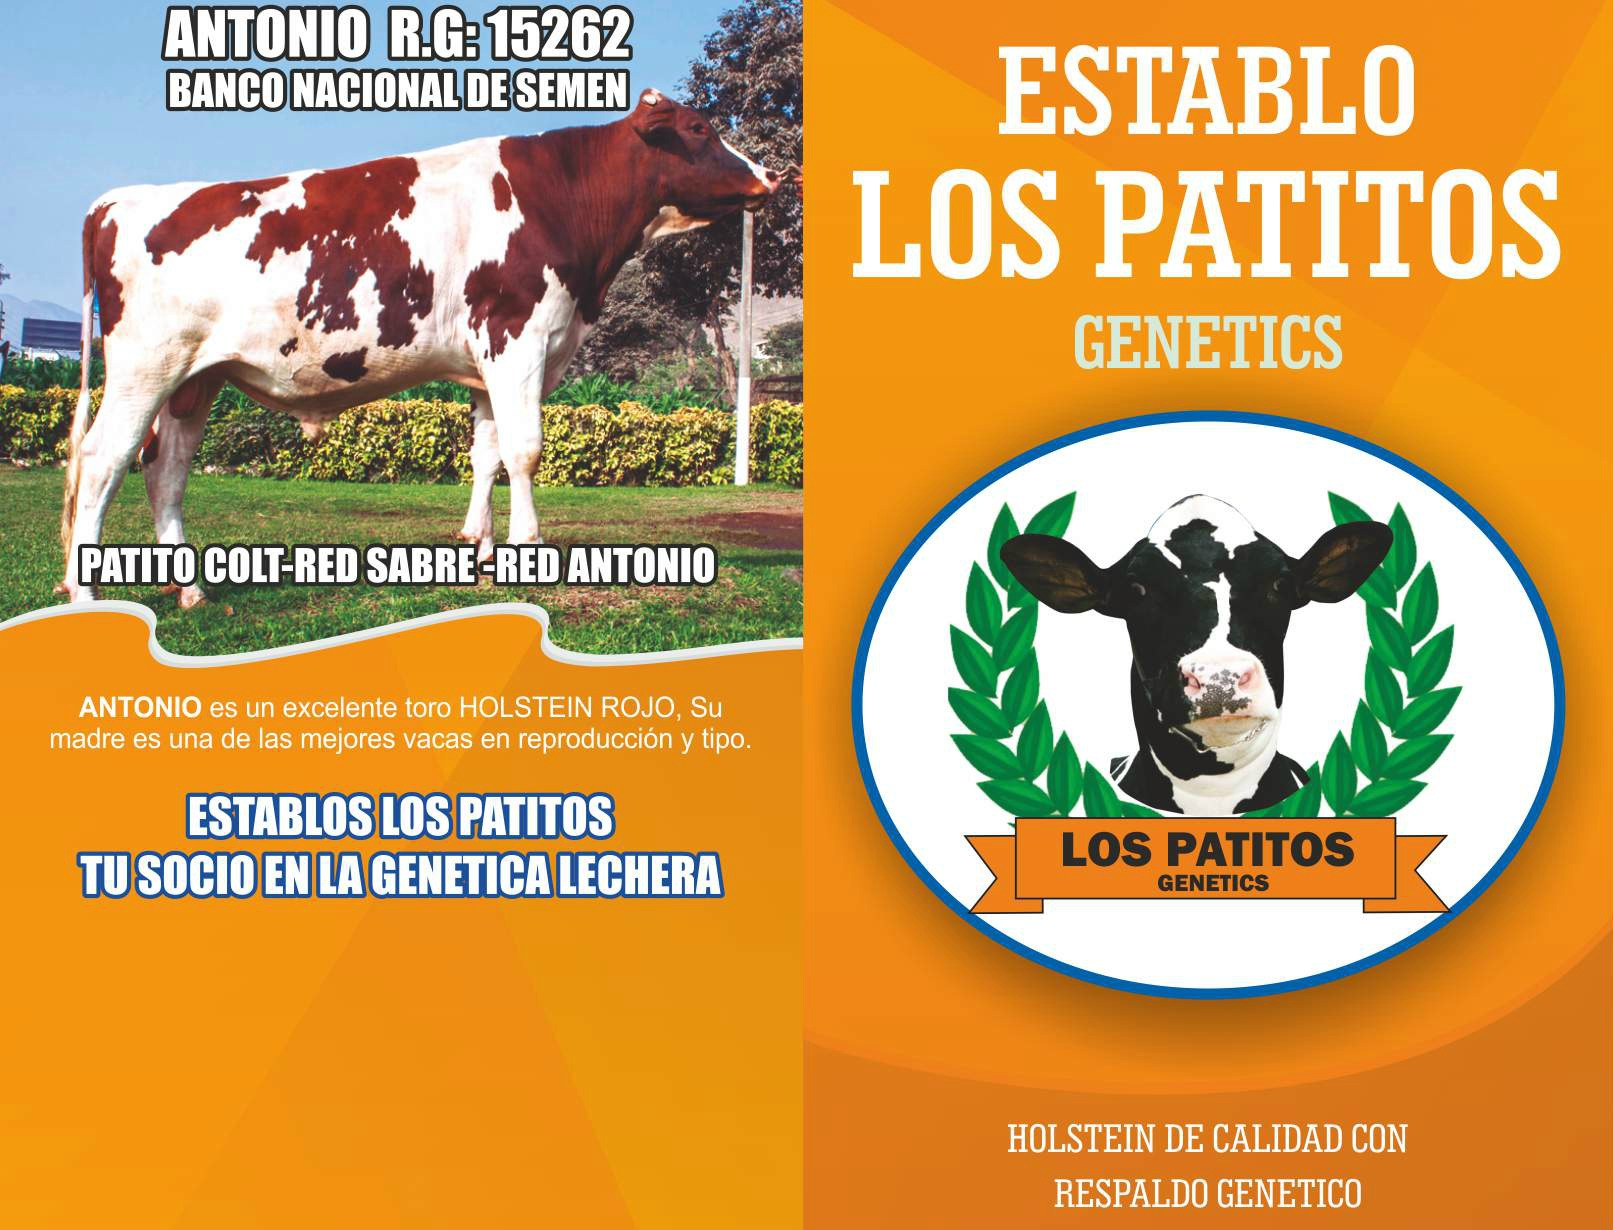 Un Toro Holstein Rojo de Excelente Genética en el Perú - Antonio RG:15262 (Venta de Semen)